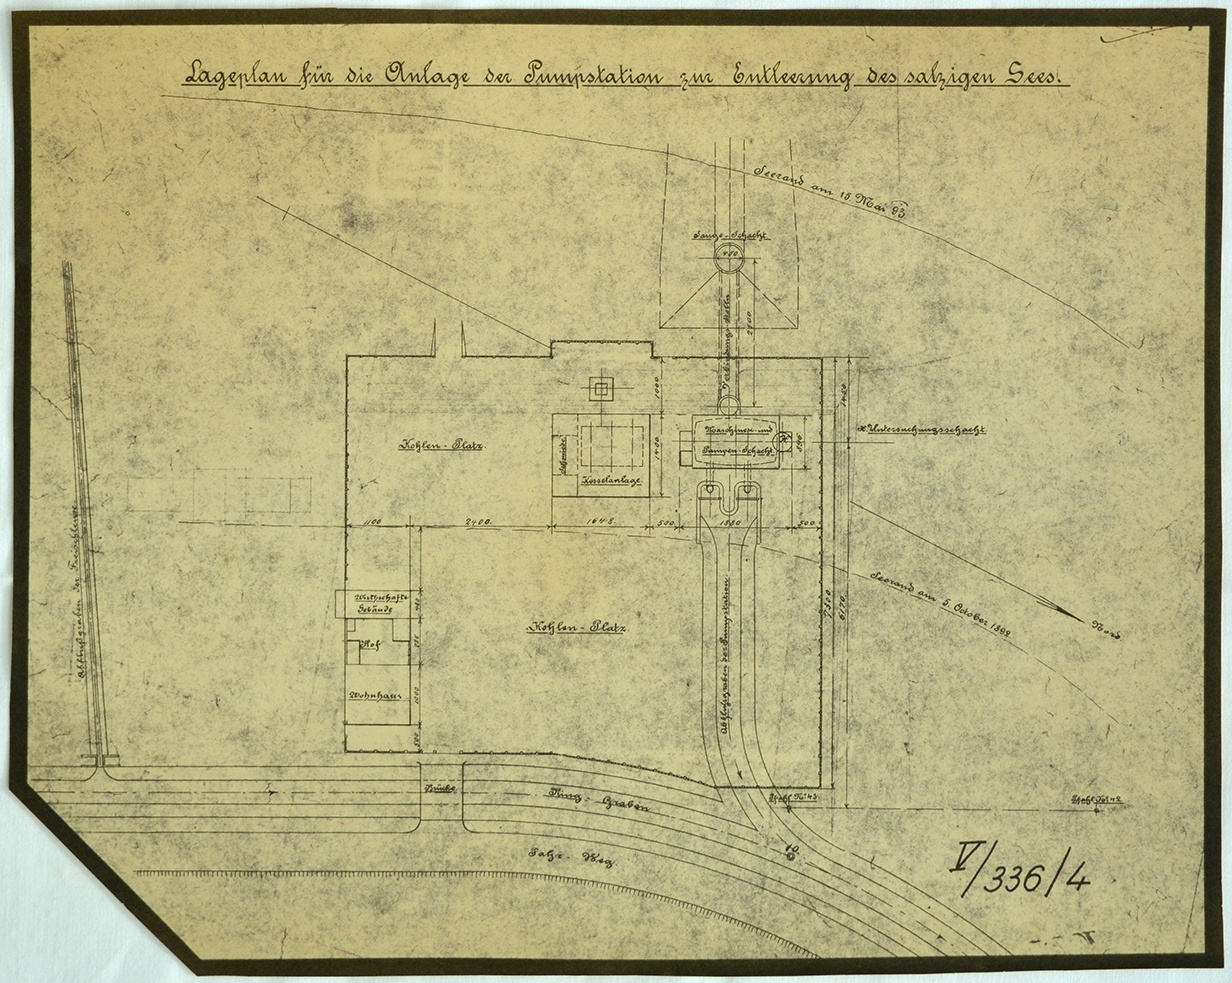 Lageplan für die Anlage der Pumpstation zur Entleerung des salzigen Sees (Mansfeld-Museum im Humboldt-Schloss CC BY-NC-SA)